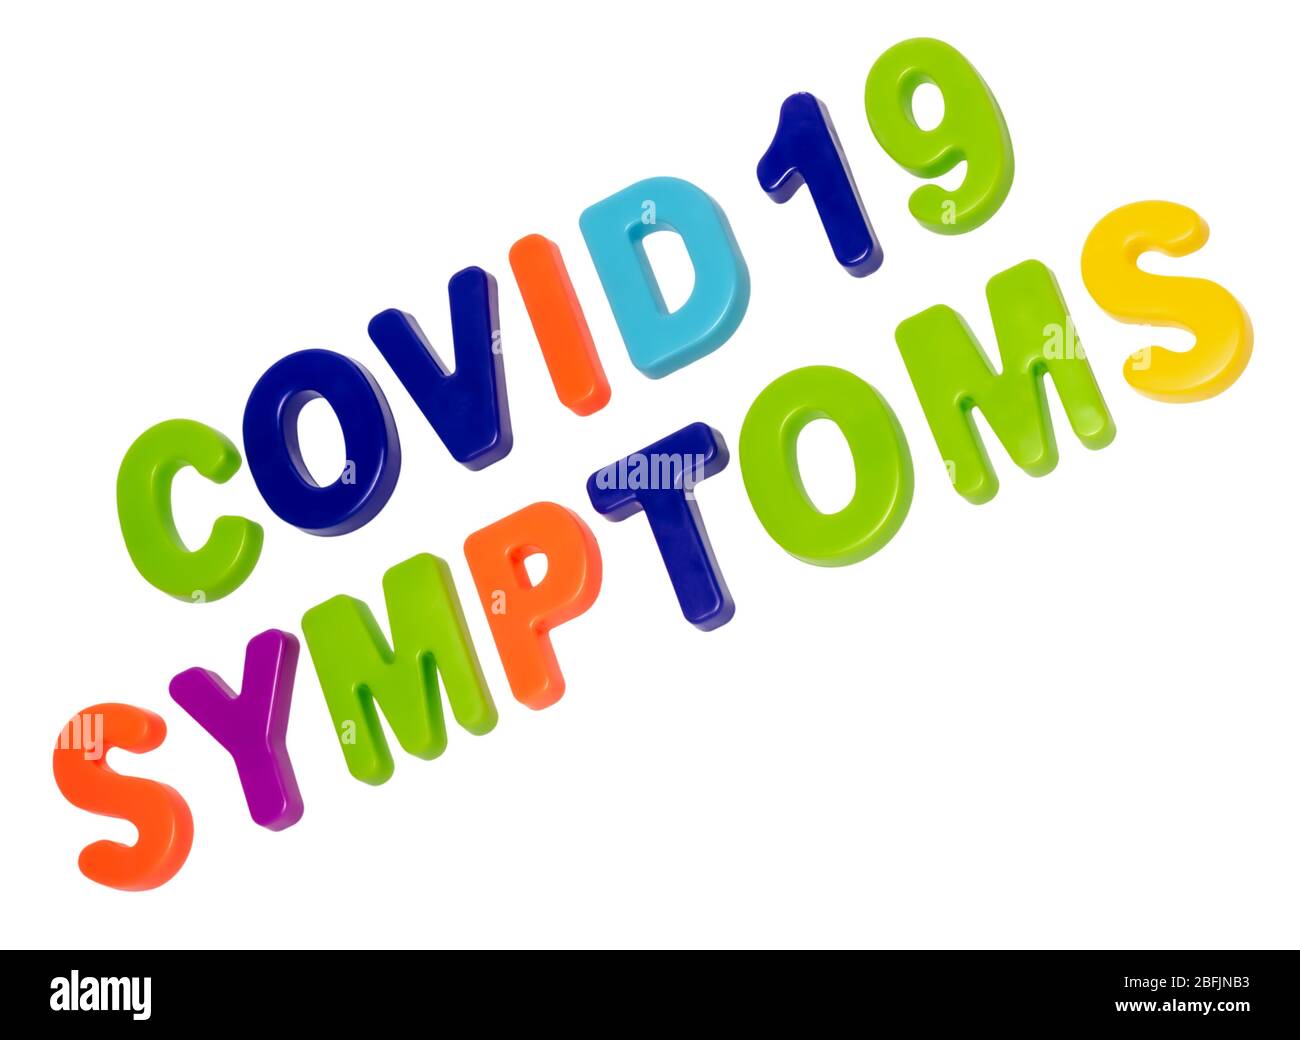 Pandemia de coronavirus, texto COVID-19 SÍNTOMAS sobre fondo blanco. Síntomas de una pandemia mundial. COVID-19 es el nuevo nombre oficial de coron Foto de stock